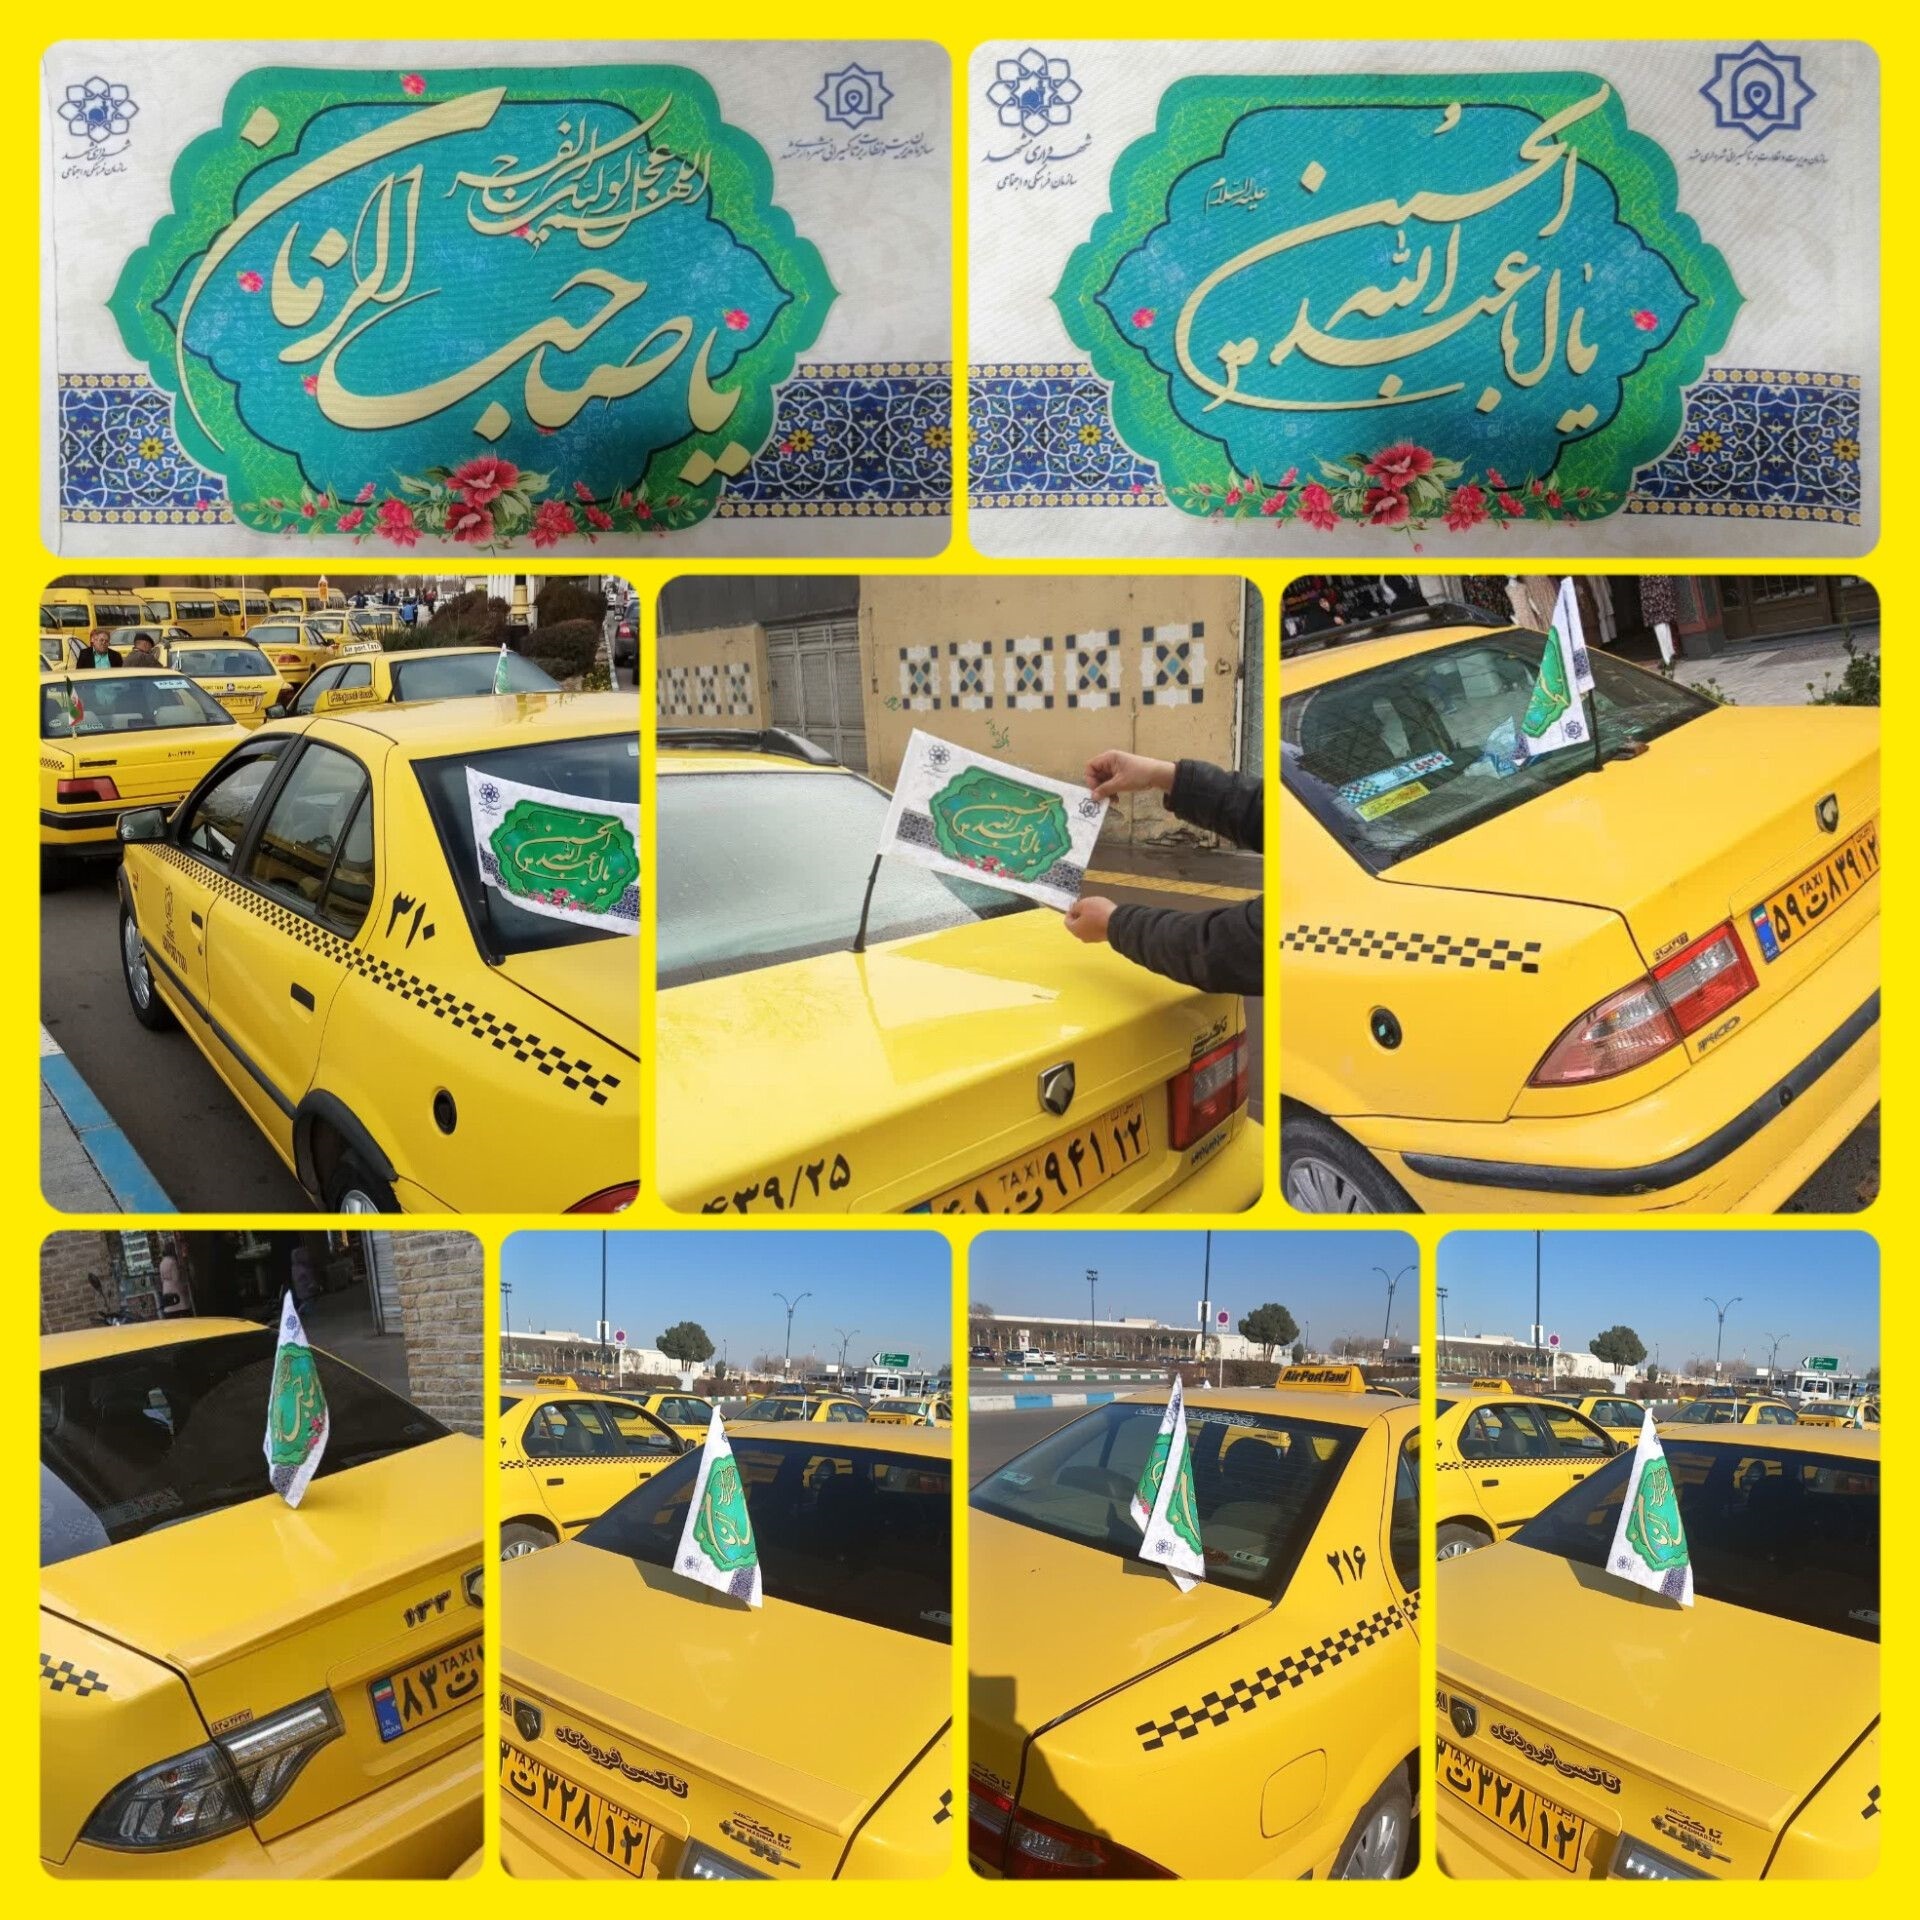 توزیع و نصب هزاران پرچم خودرویی مزین به نام حضرت مهدی (عج)